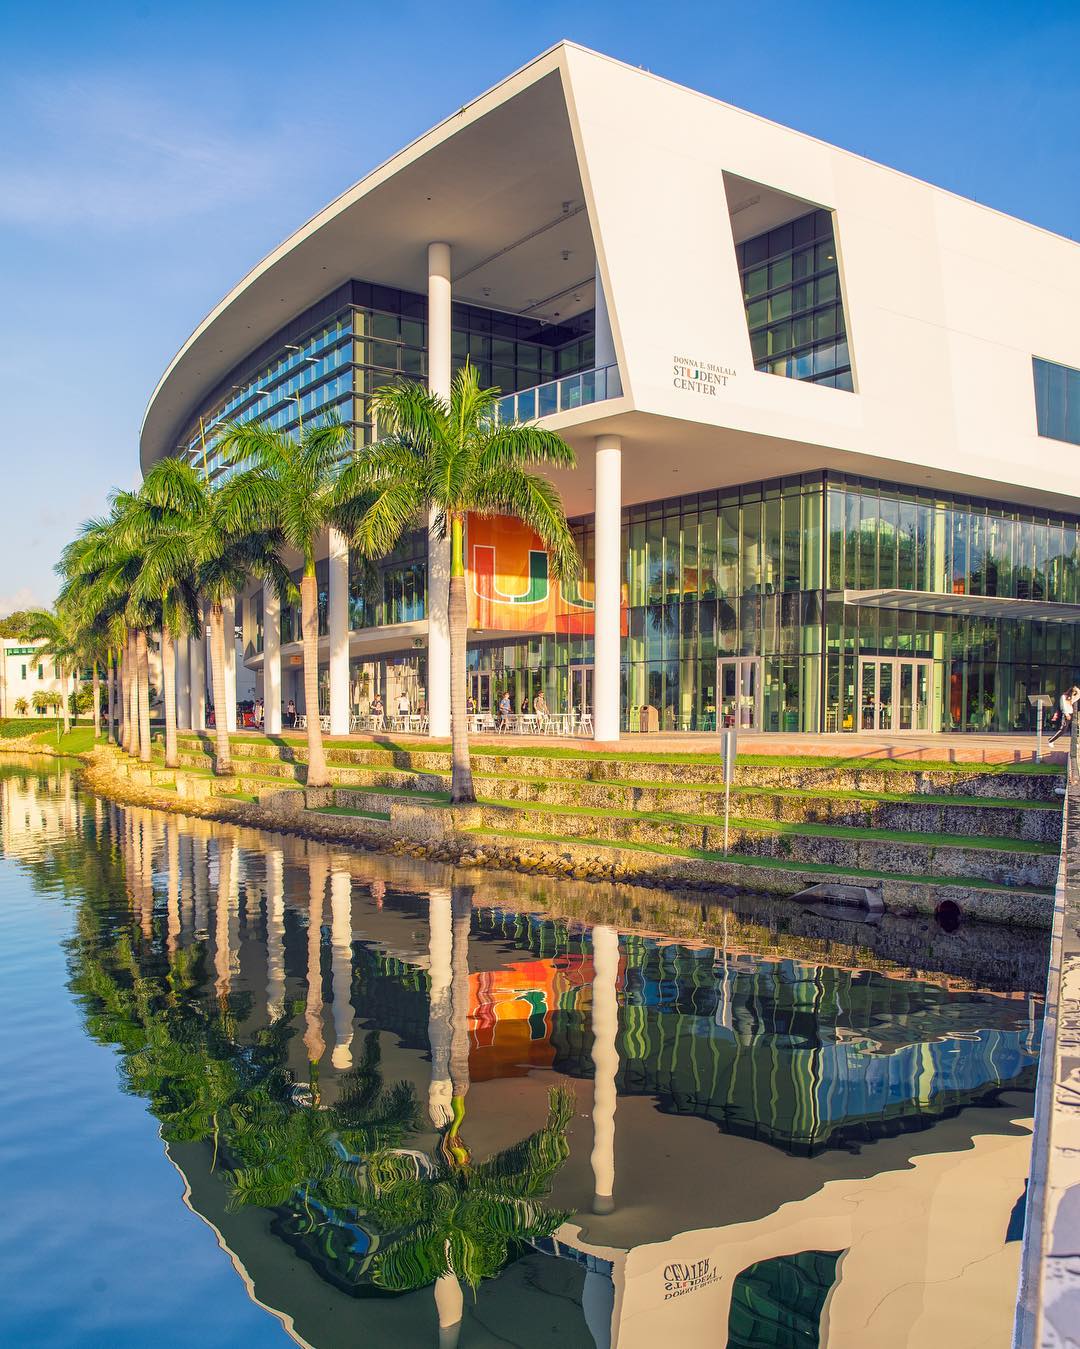 Student Center Complex near water at UMiami in Miami, FL. Photo by Instagram user @univmiami